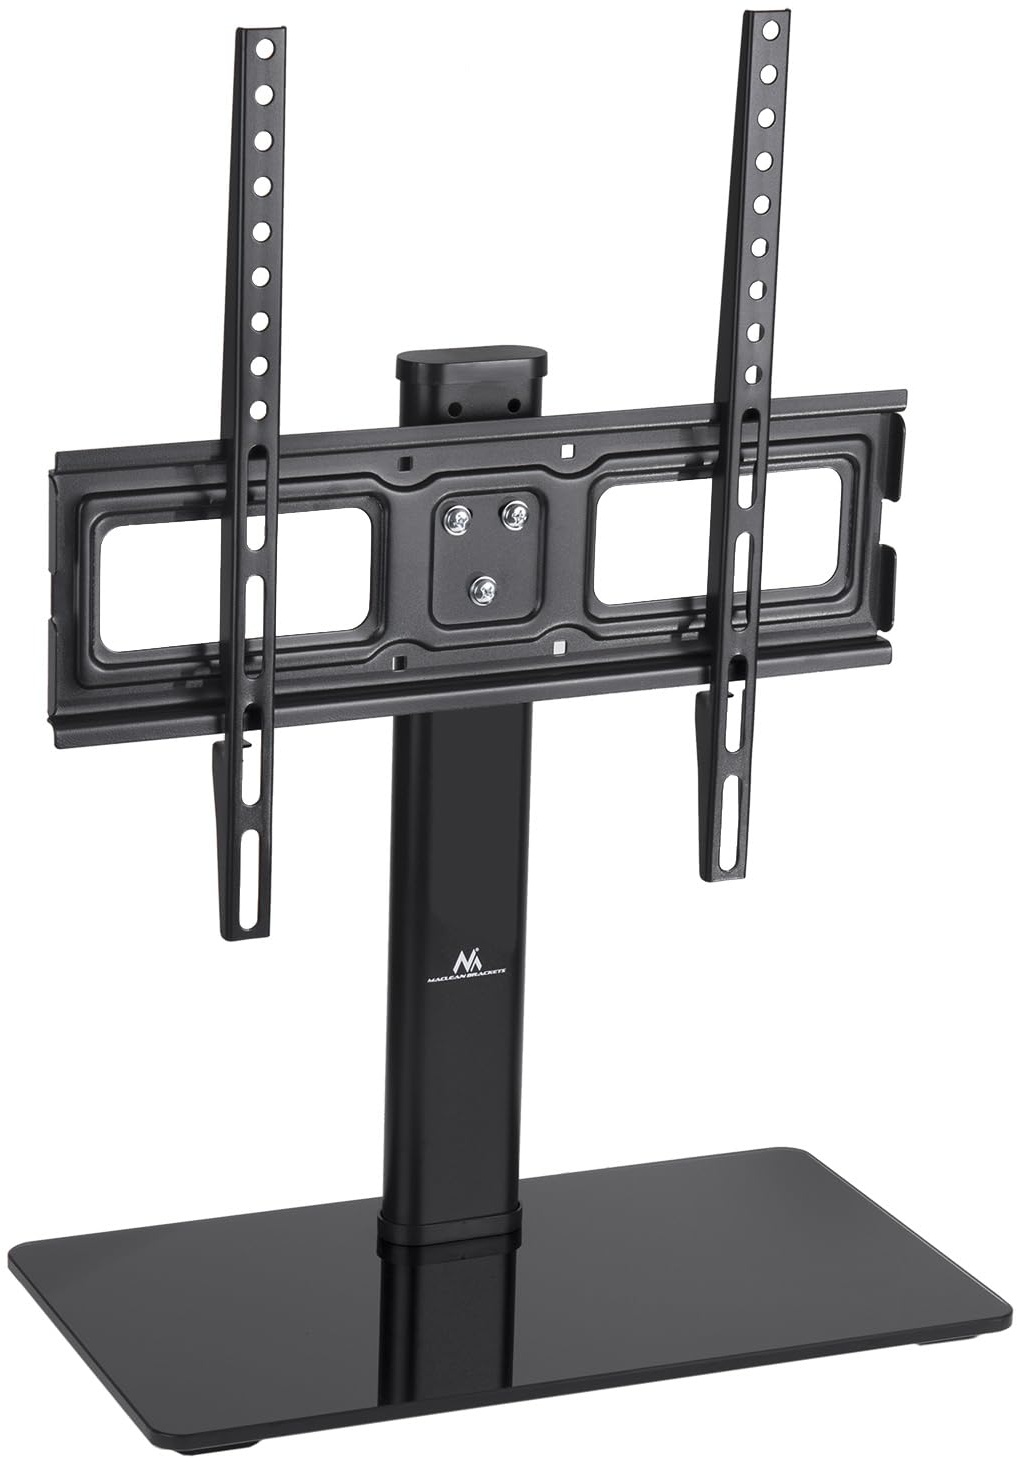 Maclean MC-450 TV-Ständer Standfüß TV Bildschirm Stand für 32-65" QLED LCD LED OLED Plasma Fernseher bis max. 40kg max. VESA 400x400, Höhenverstellbar